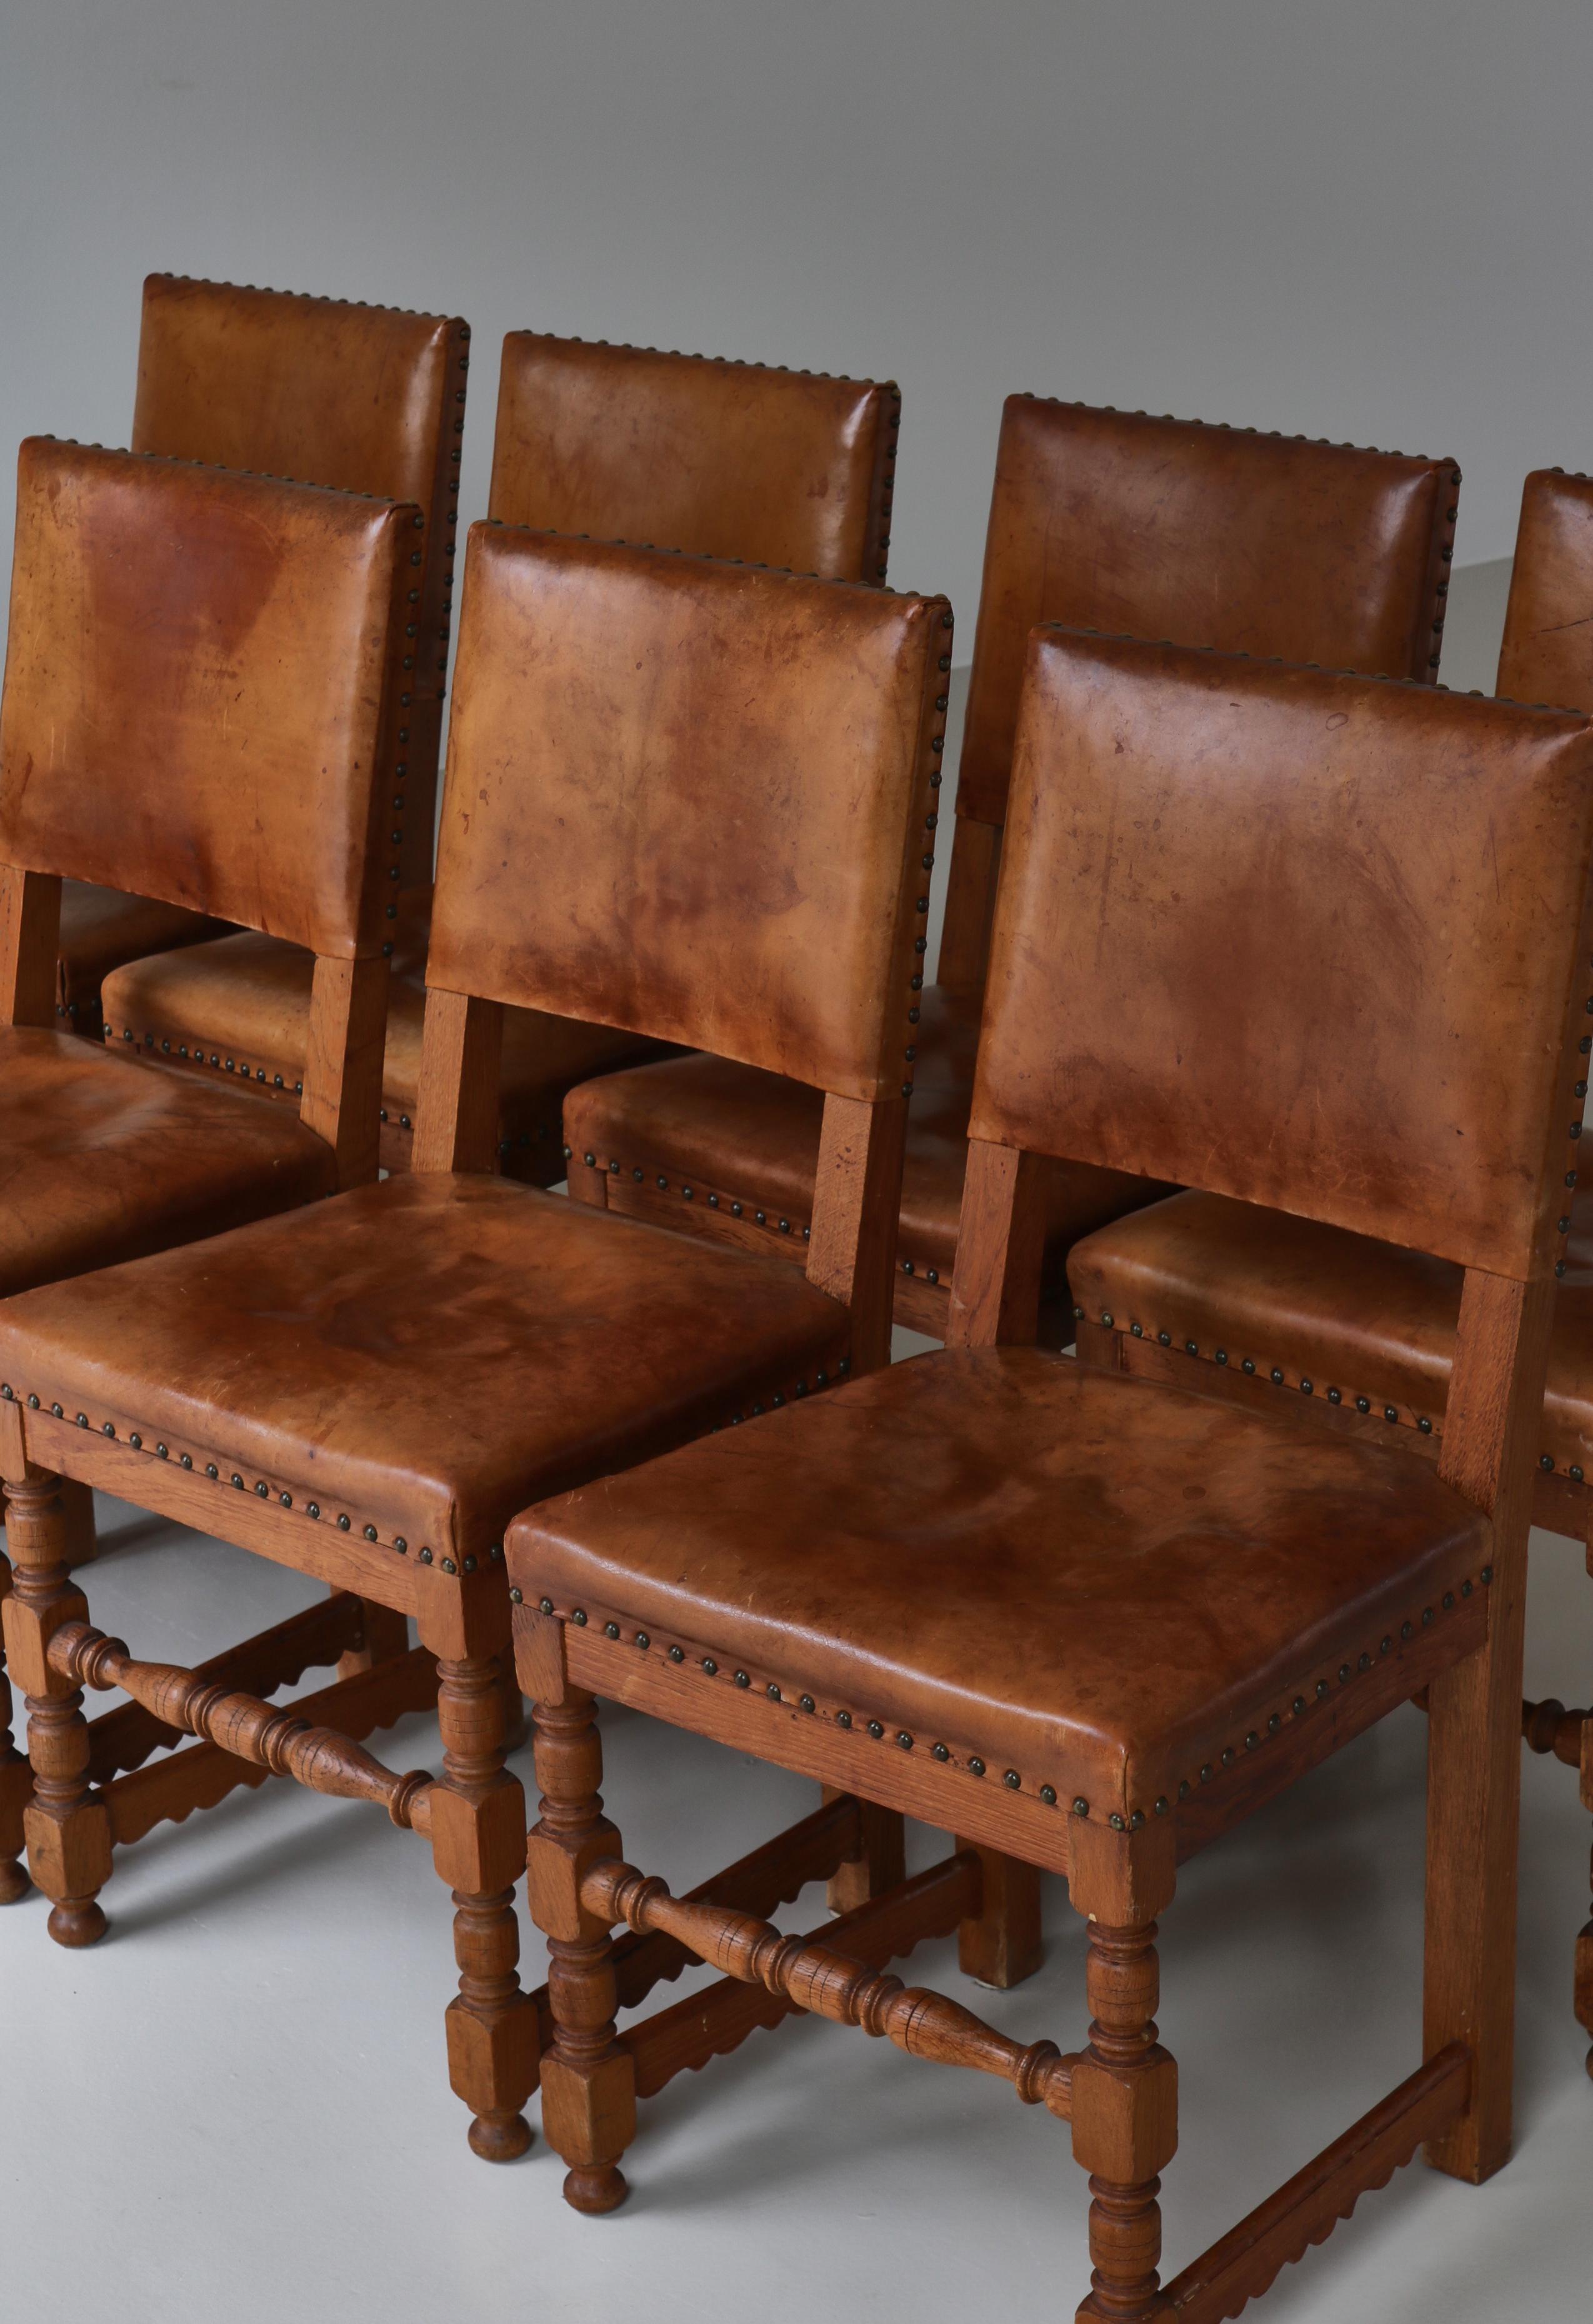 Master Cabinetmaker Lars Møller Dining Chairs in Oak & Leather, Denmark, 1935 For Sale 4